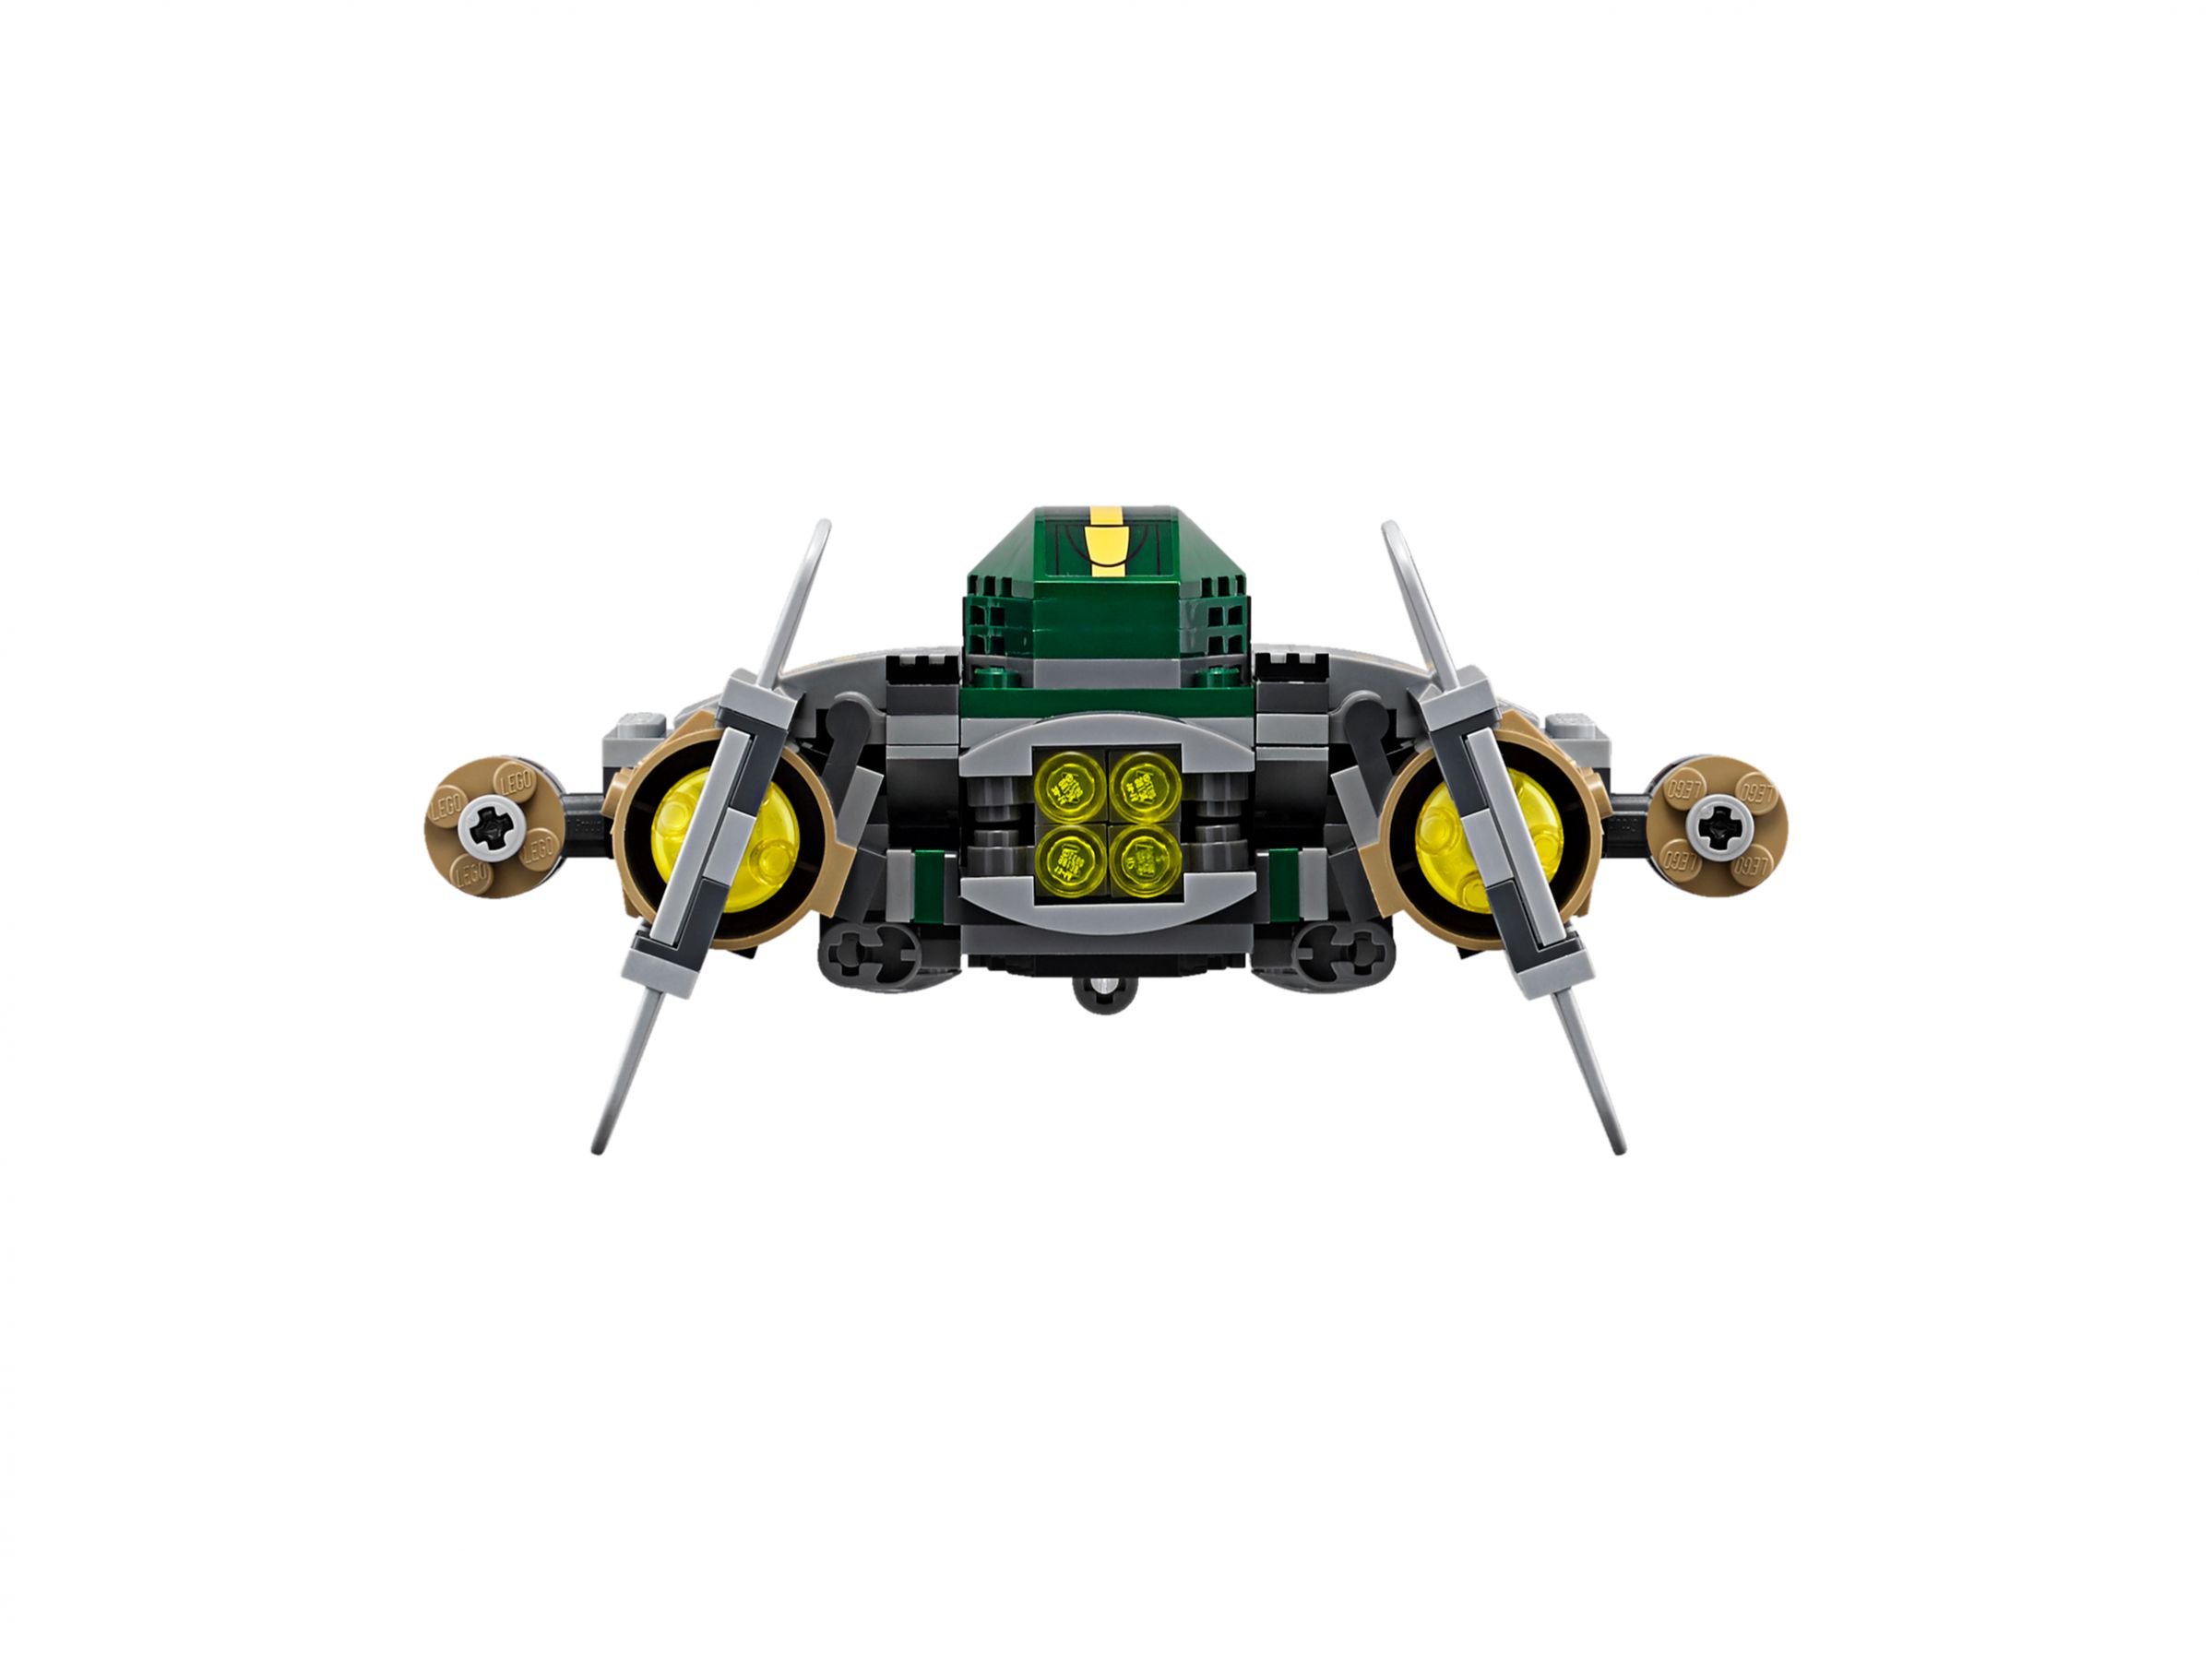 LEGO Star Wars 75150 Vader's TIE Advanced vs. A-Wing Starfighter LEGO_75150_alt8.jpg